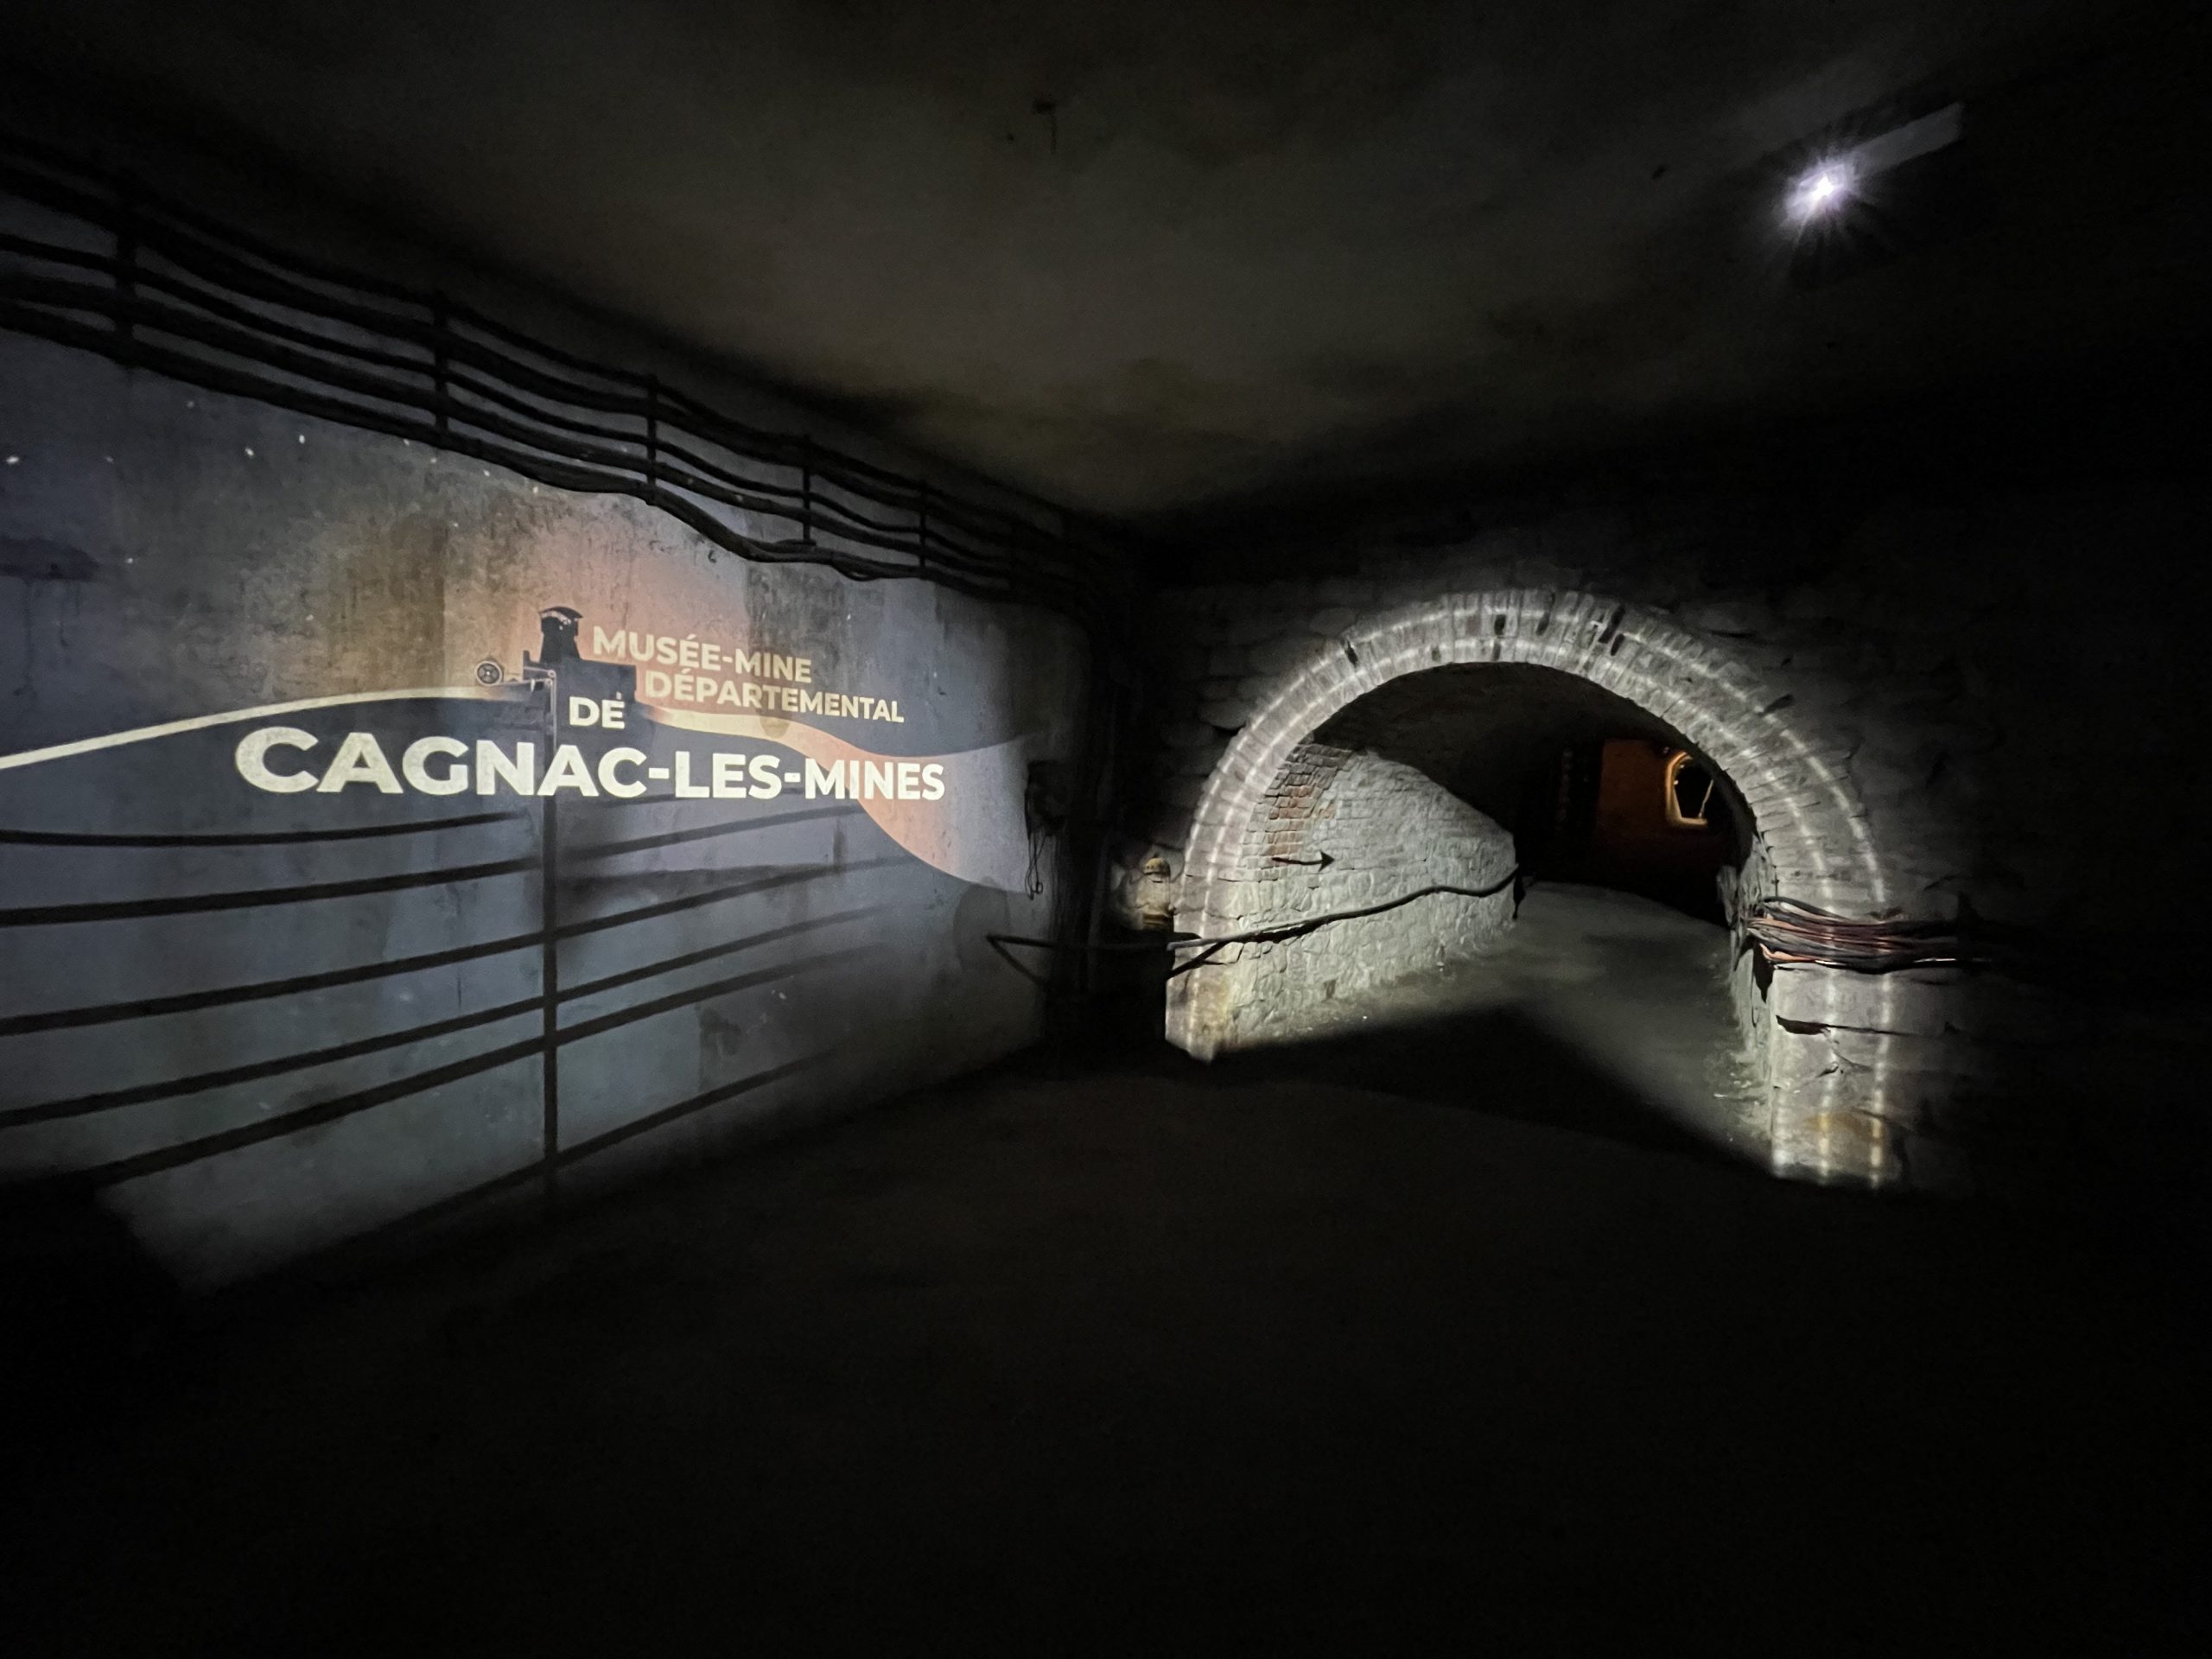 Lire la suite à propos de l’article Musée-mine Départemental à Cagnac-les-Mines